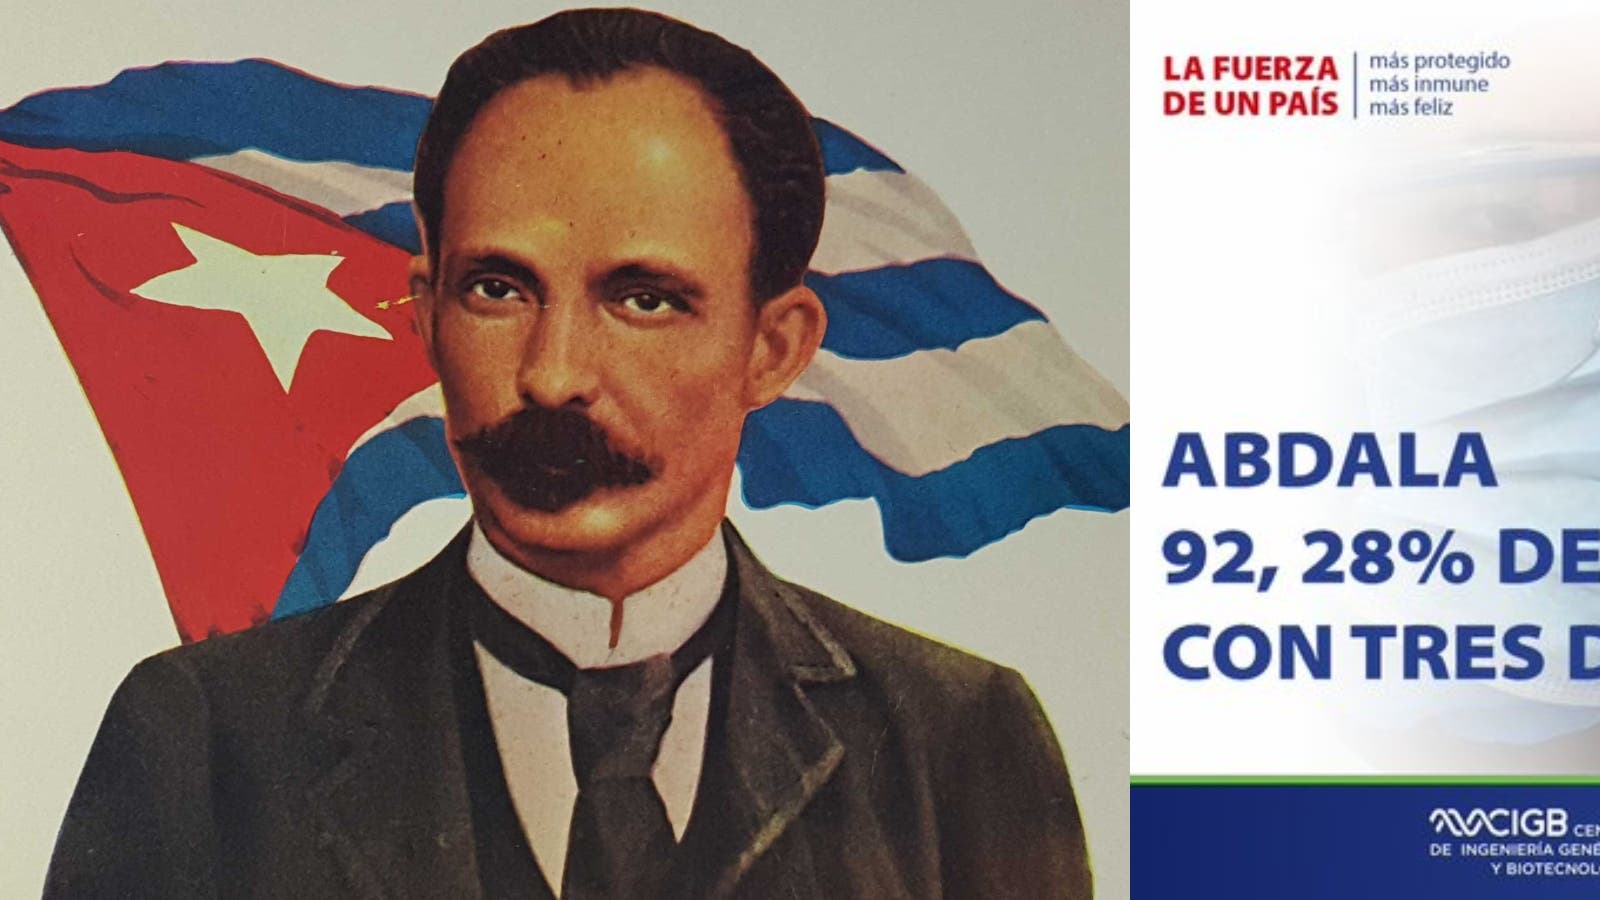 Viva la Abdala! Вакцинация по-кубински - 2